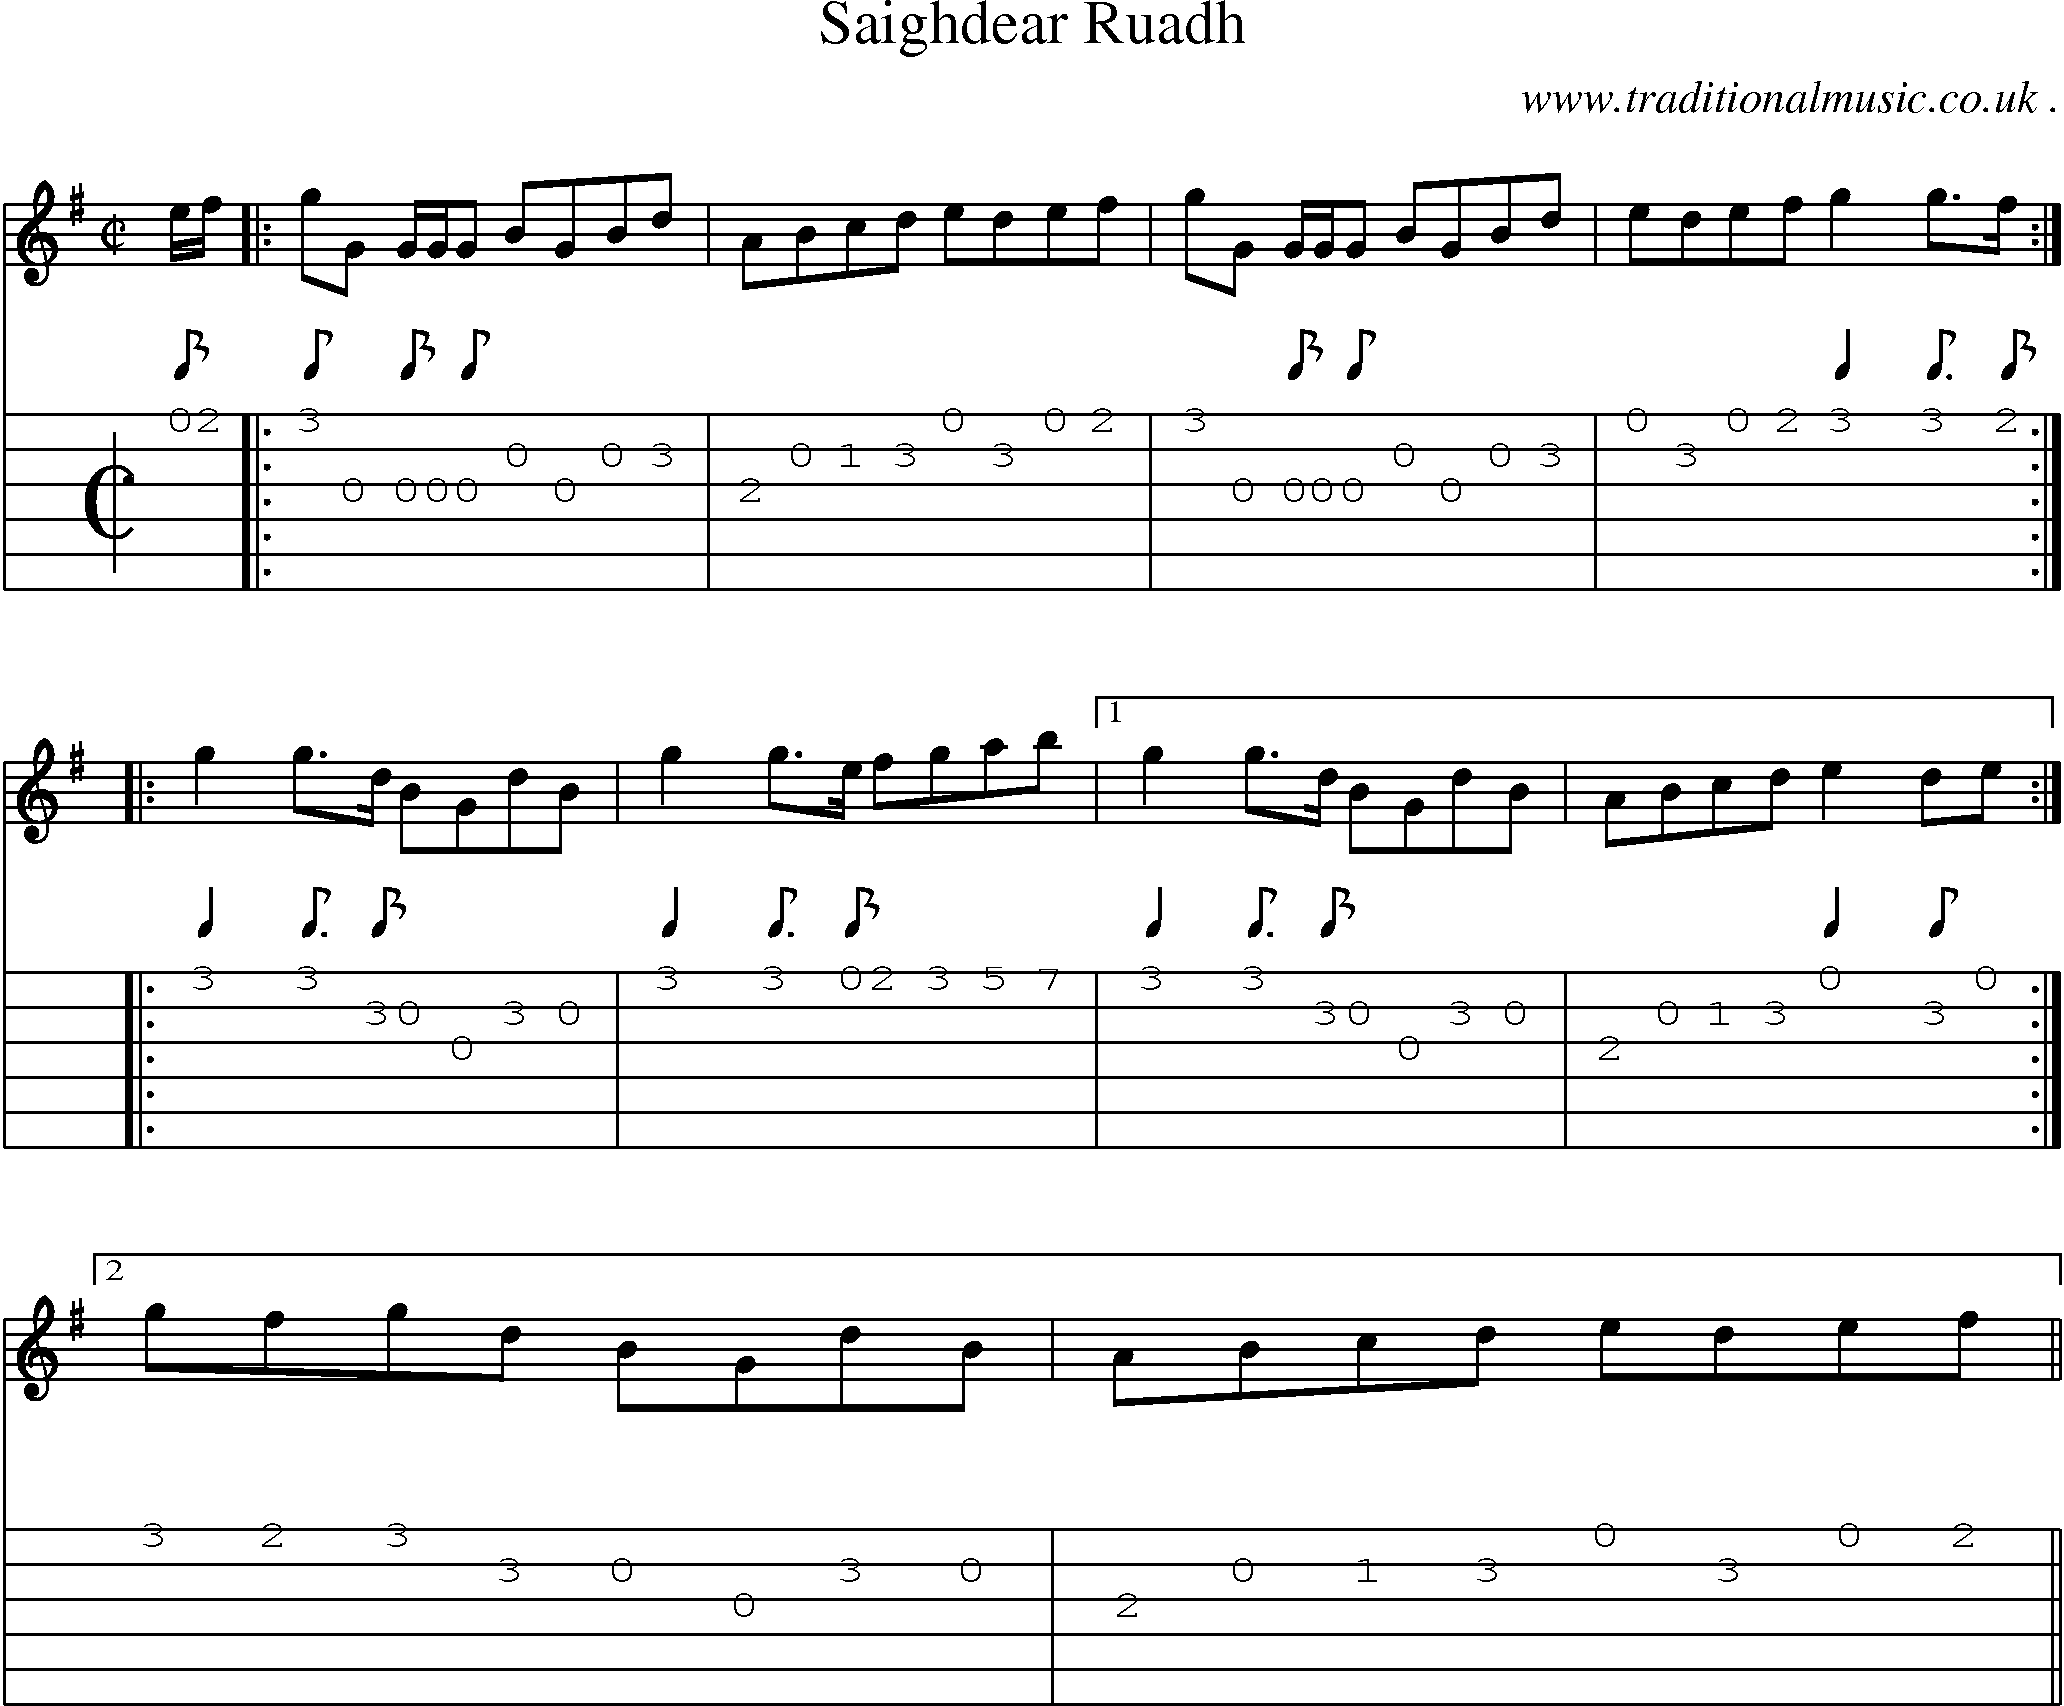 Sheet-music  score, Chords and Guitar Tabs for Saighdear Ruadh